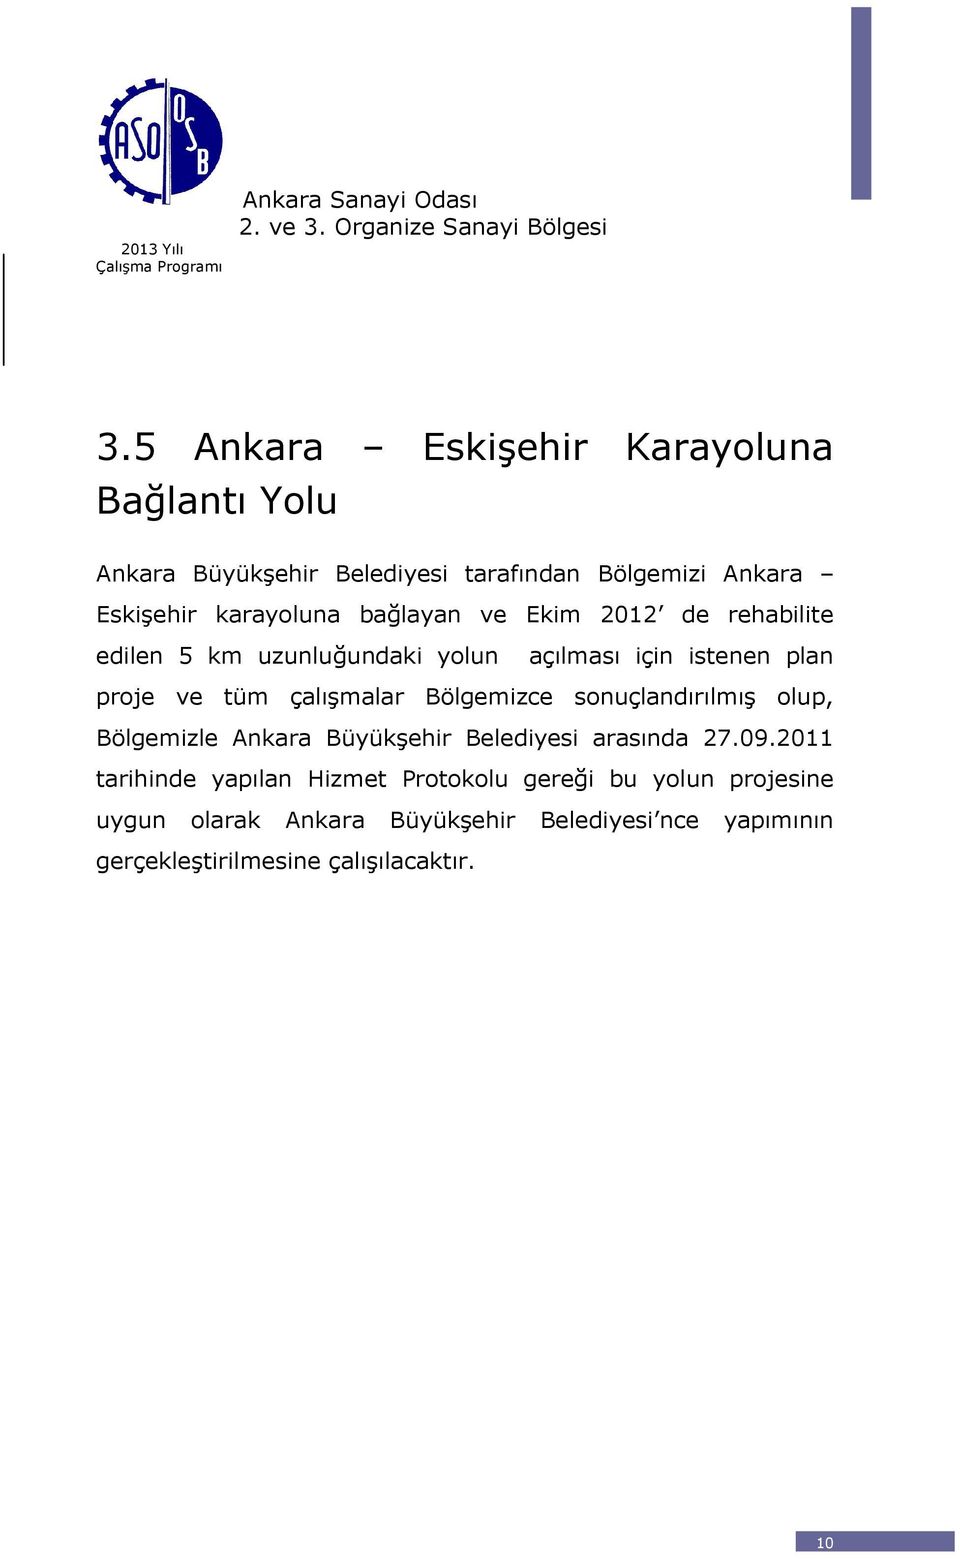 Bölgemizce sonuçlandırılmıģ olup, Bölgemizle Ankara BüyükĢehir Belediyesi arasında 27.09.